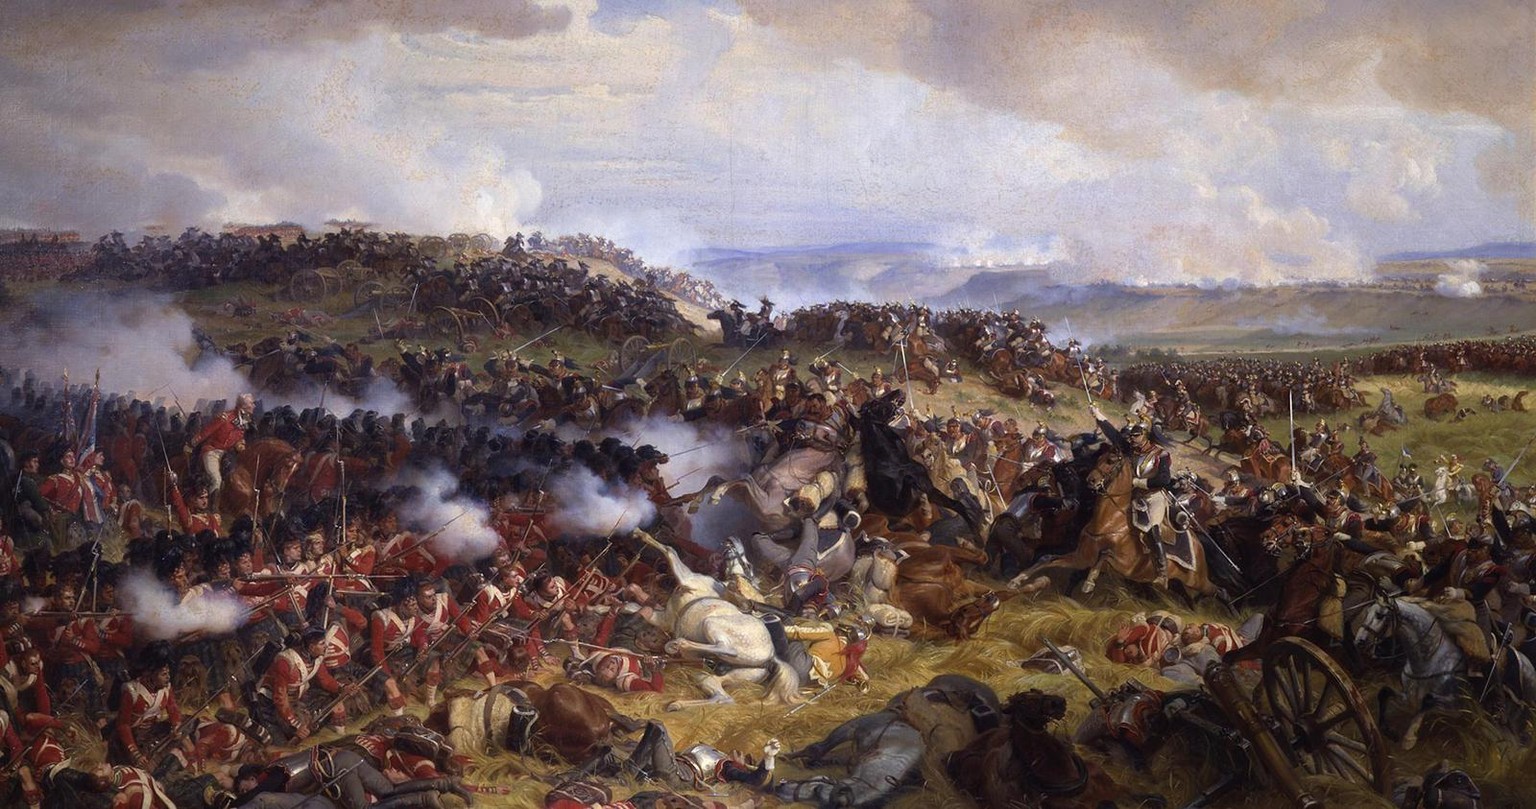 Die Schlacht von Waterloo: Die Briten erwarten den Angriff der französischen Kürassiere, gemalt von Félix Henri Emmanuel Philippoteaux, 1874.
https://collections.vam.ac.uk/item/O133043/the-battle-of-w ...